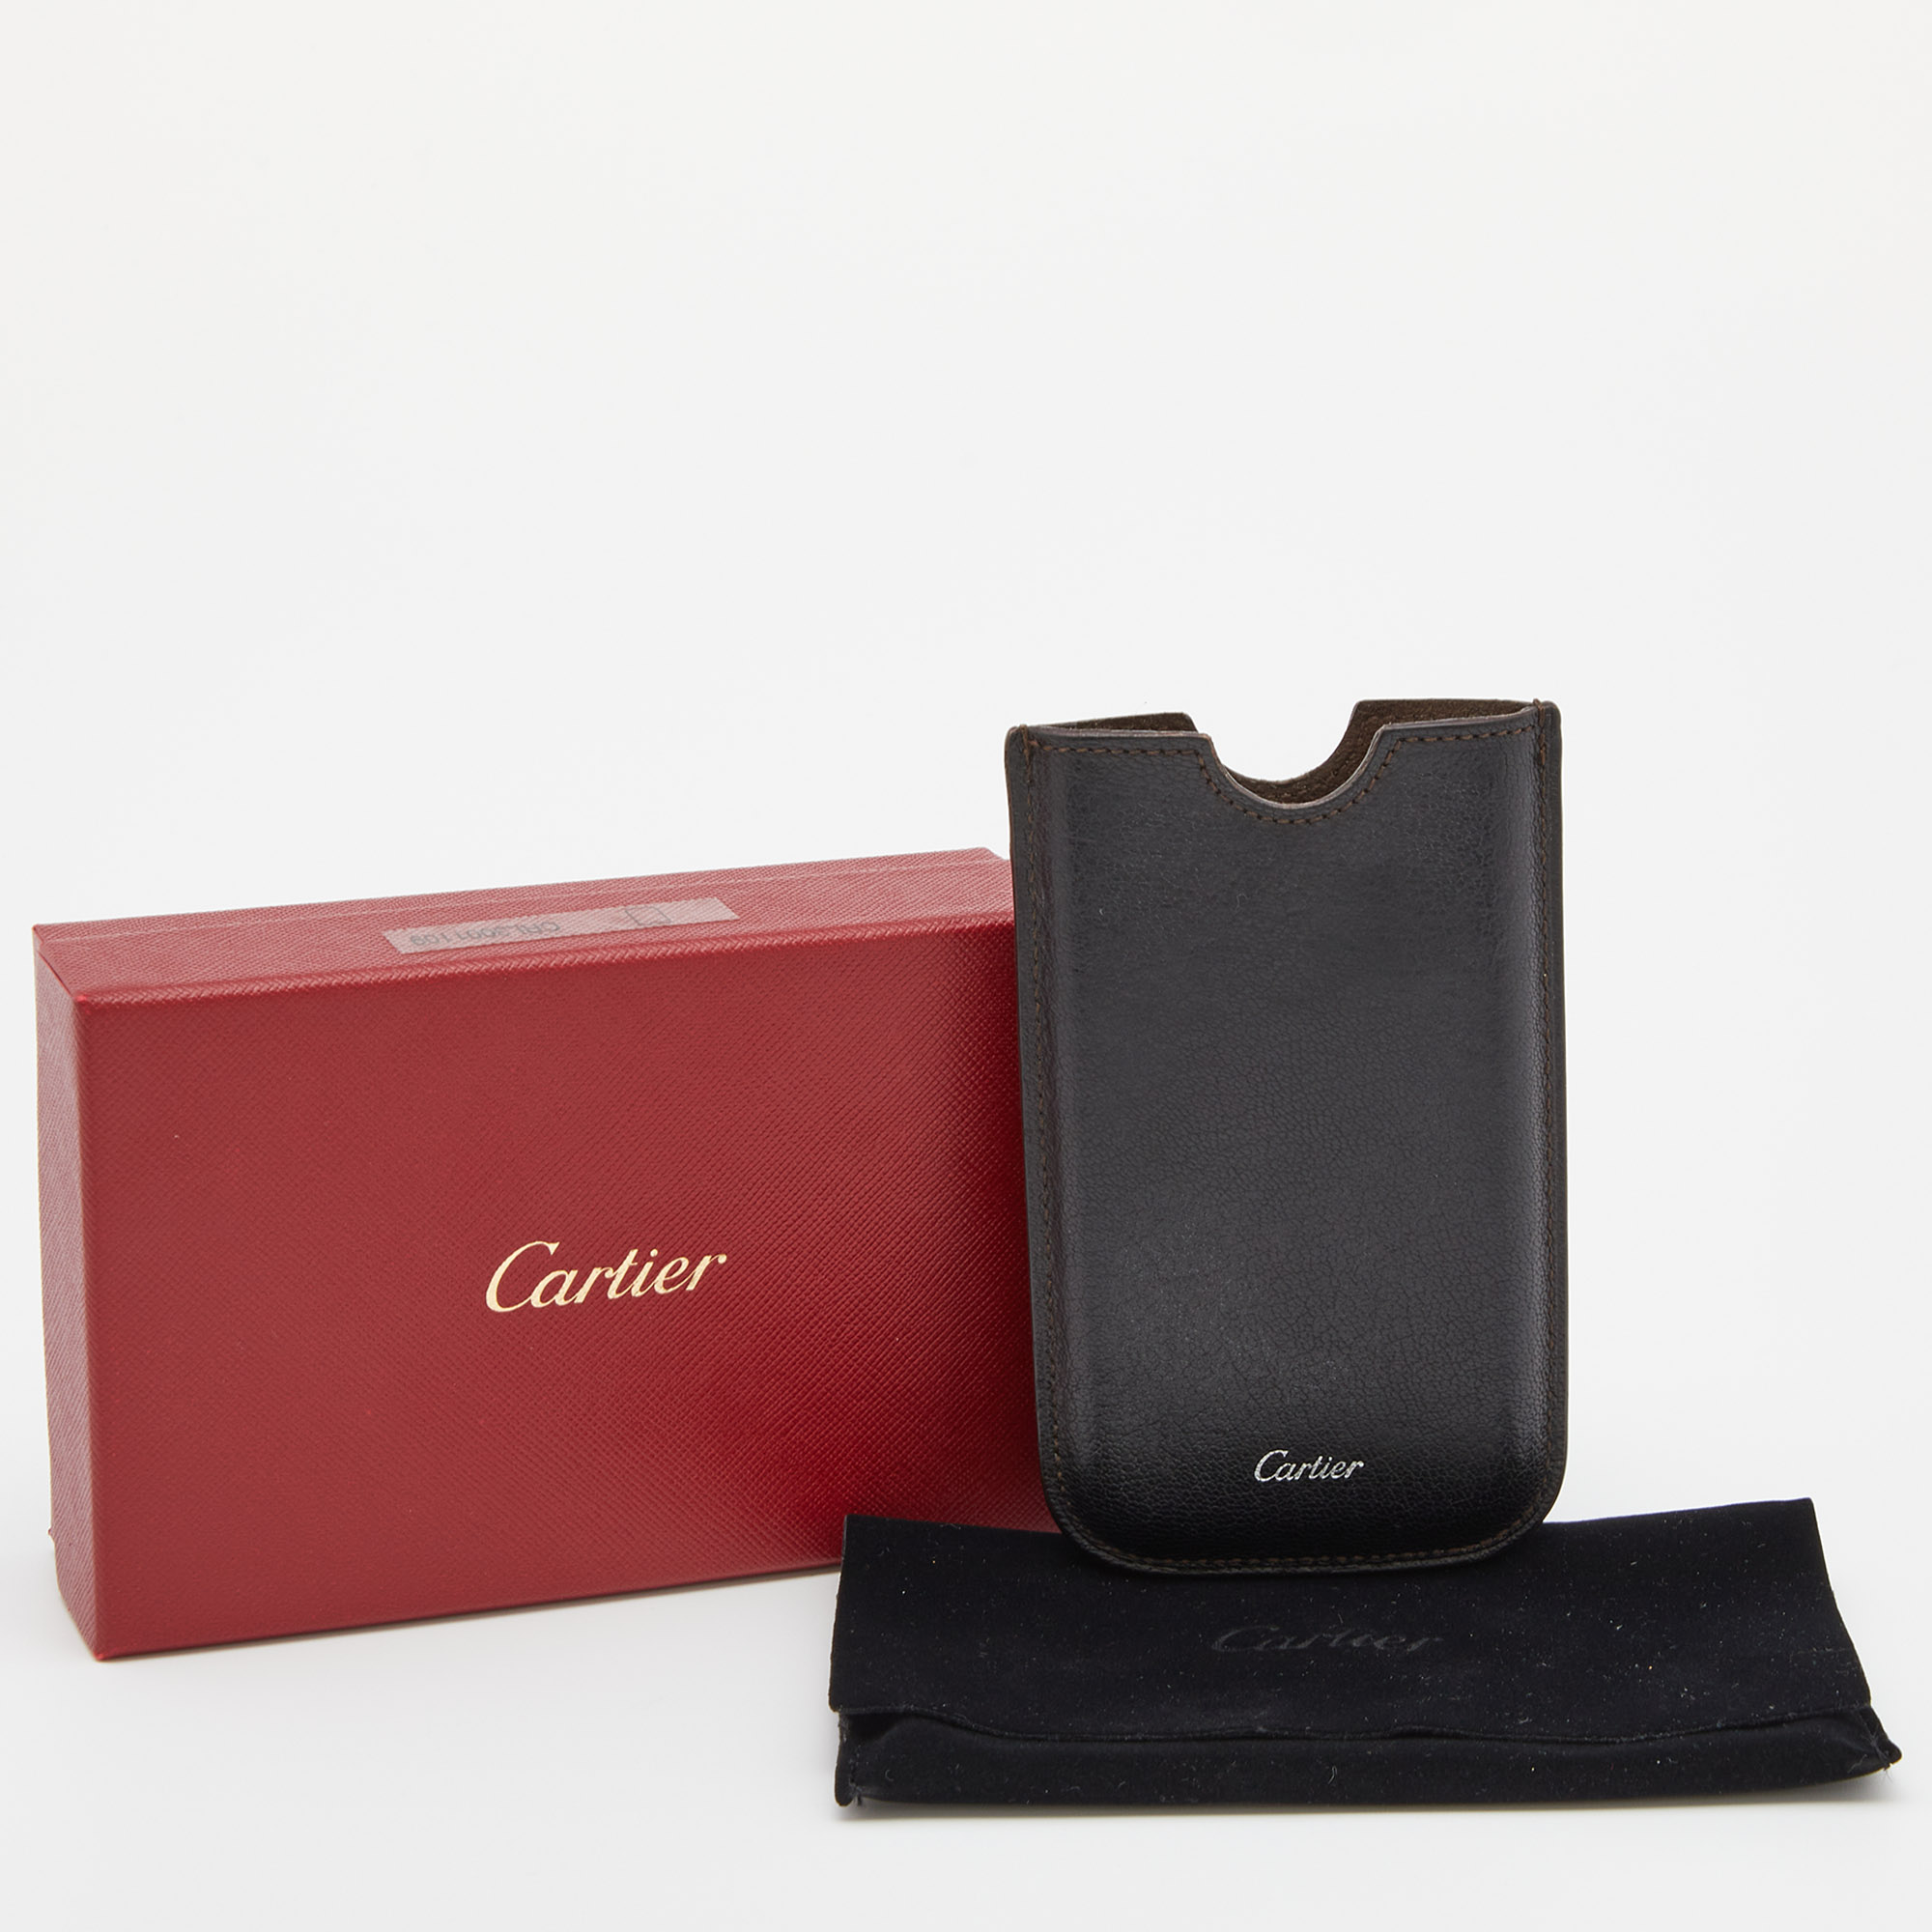 Cartier Dark Brown Leather Phone Case